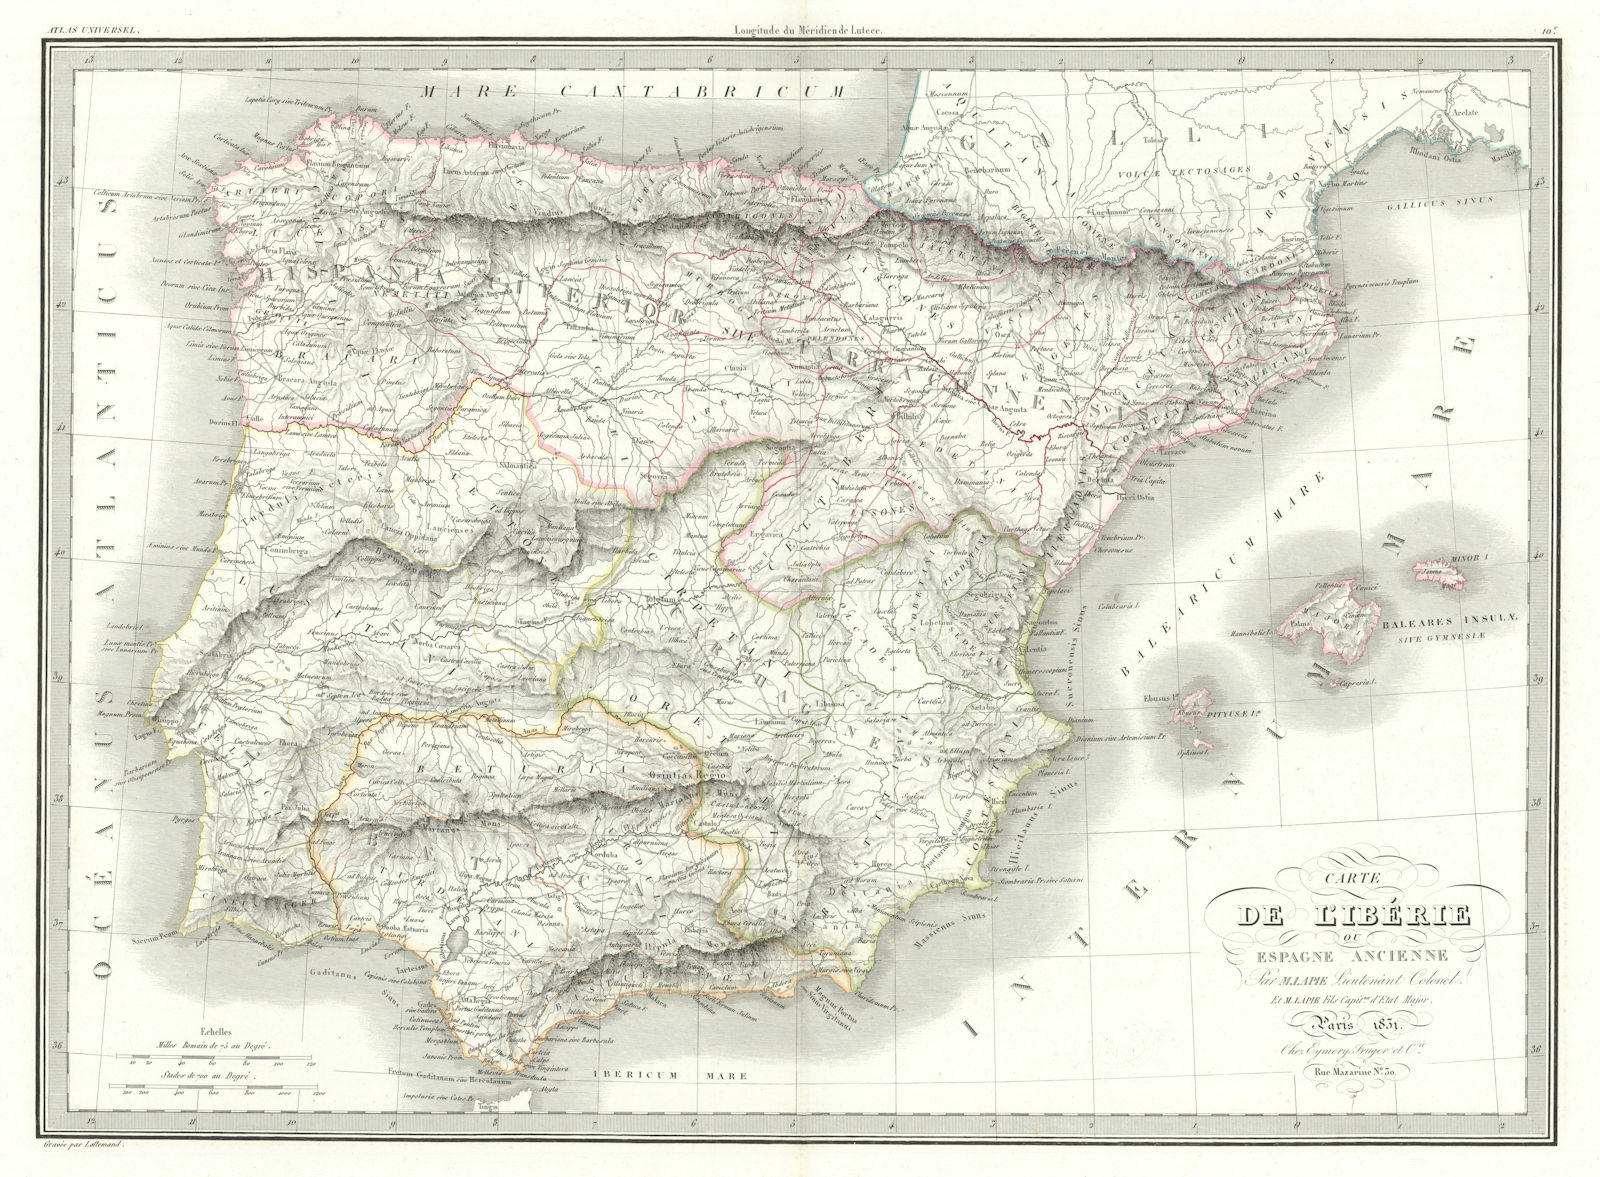 Associate Product Carte de l'Ibérie ou Espagne ancienne. Iberia or Ancient Spain. LAPIE 1831 map